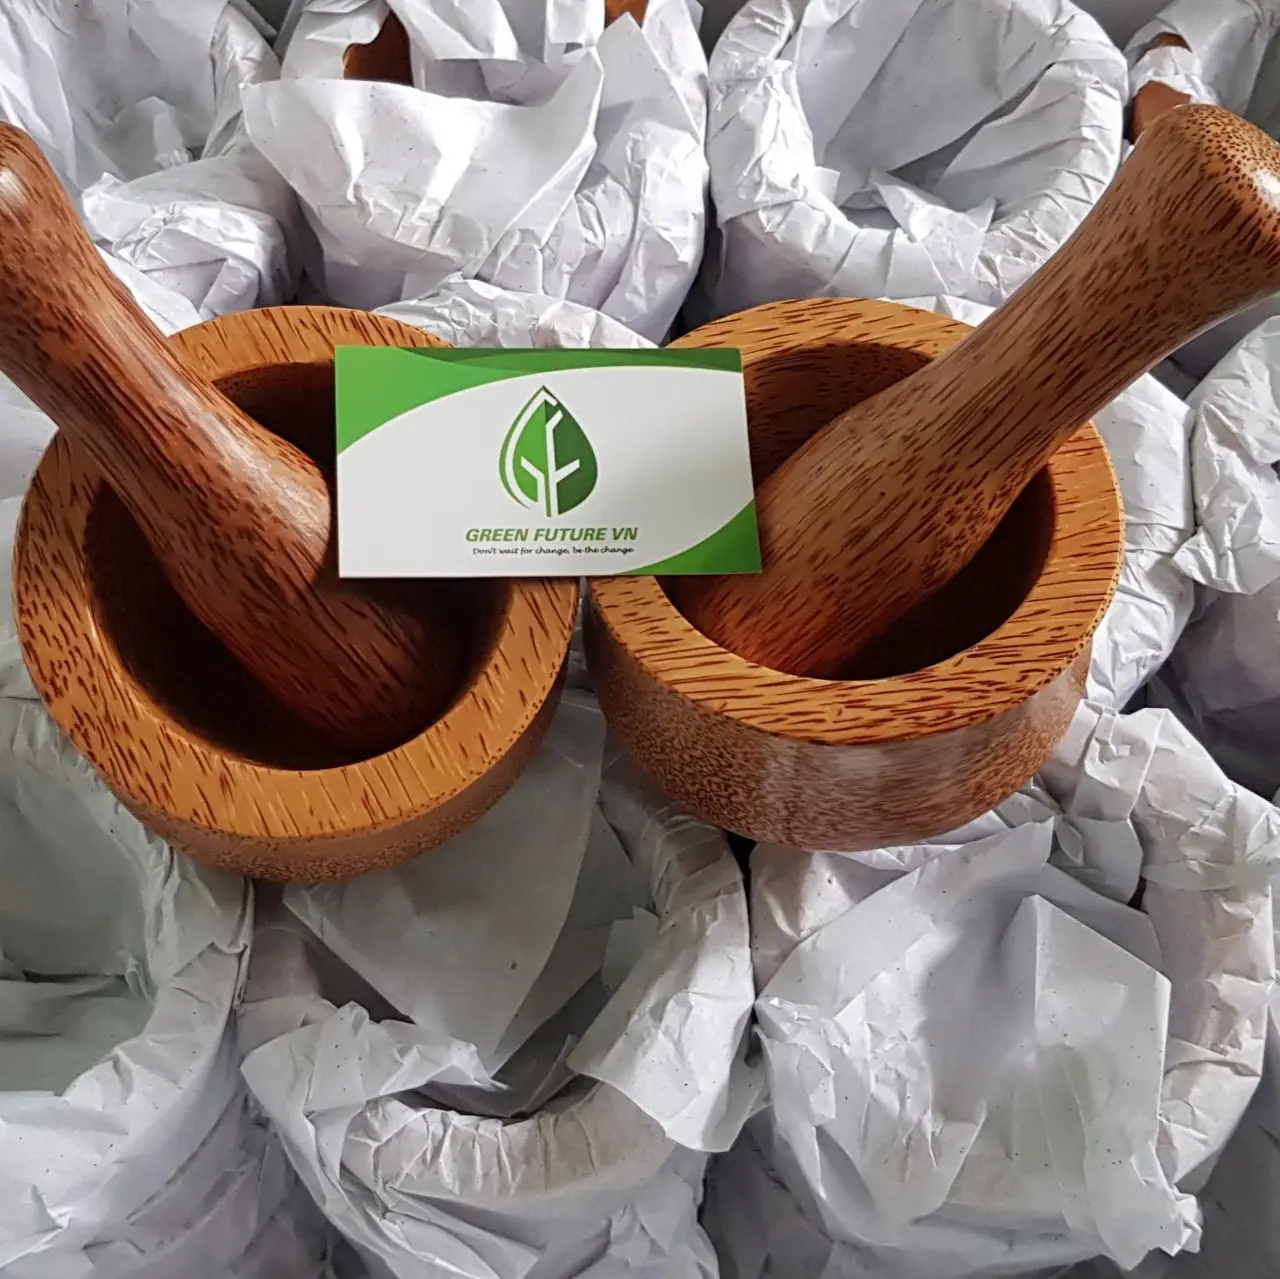 Großhandel Kokosnuss mörser und Stößel Set aus Vietnam Nam/Kokosnuss Produkt